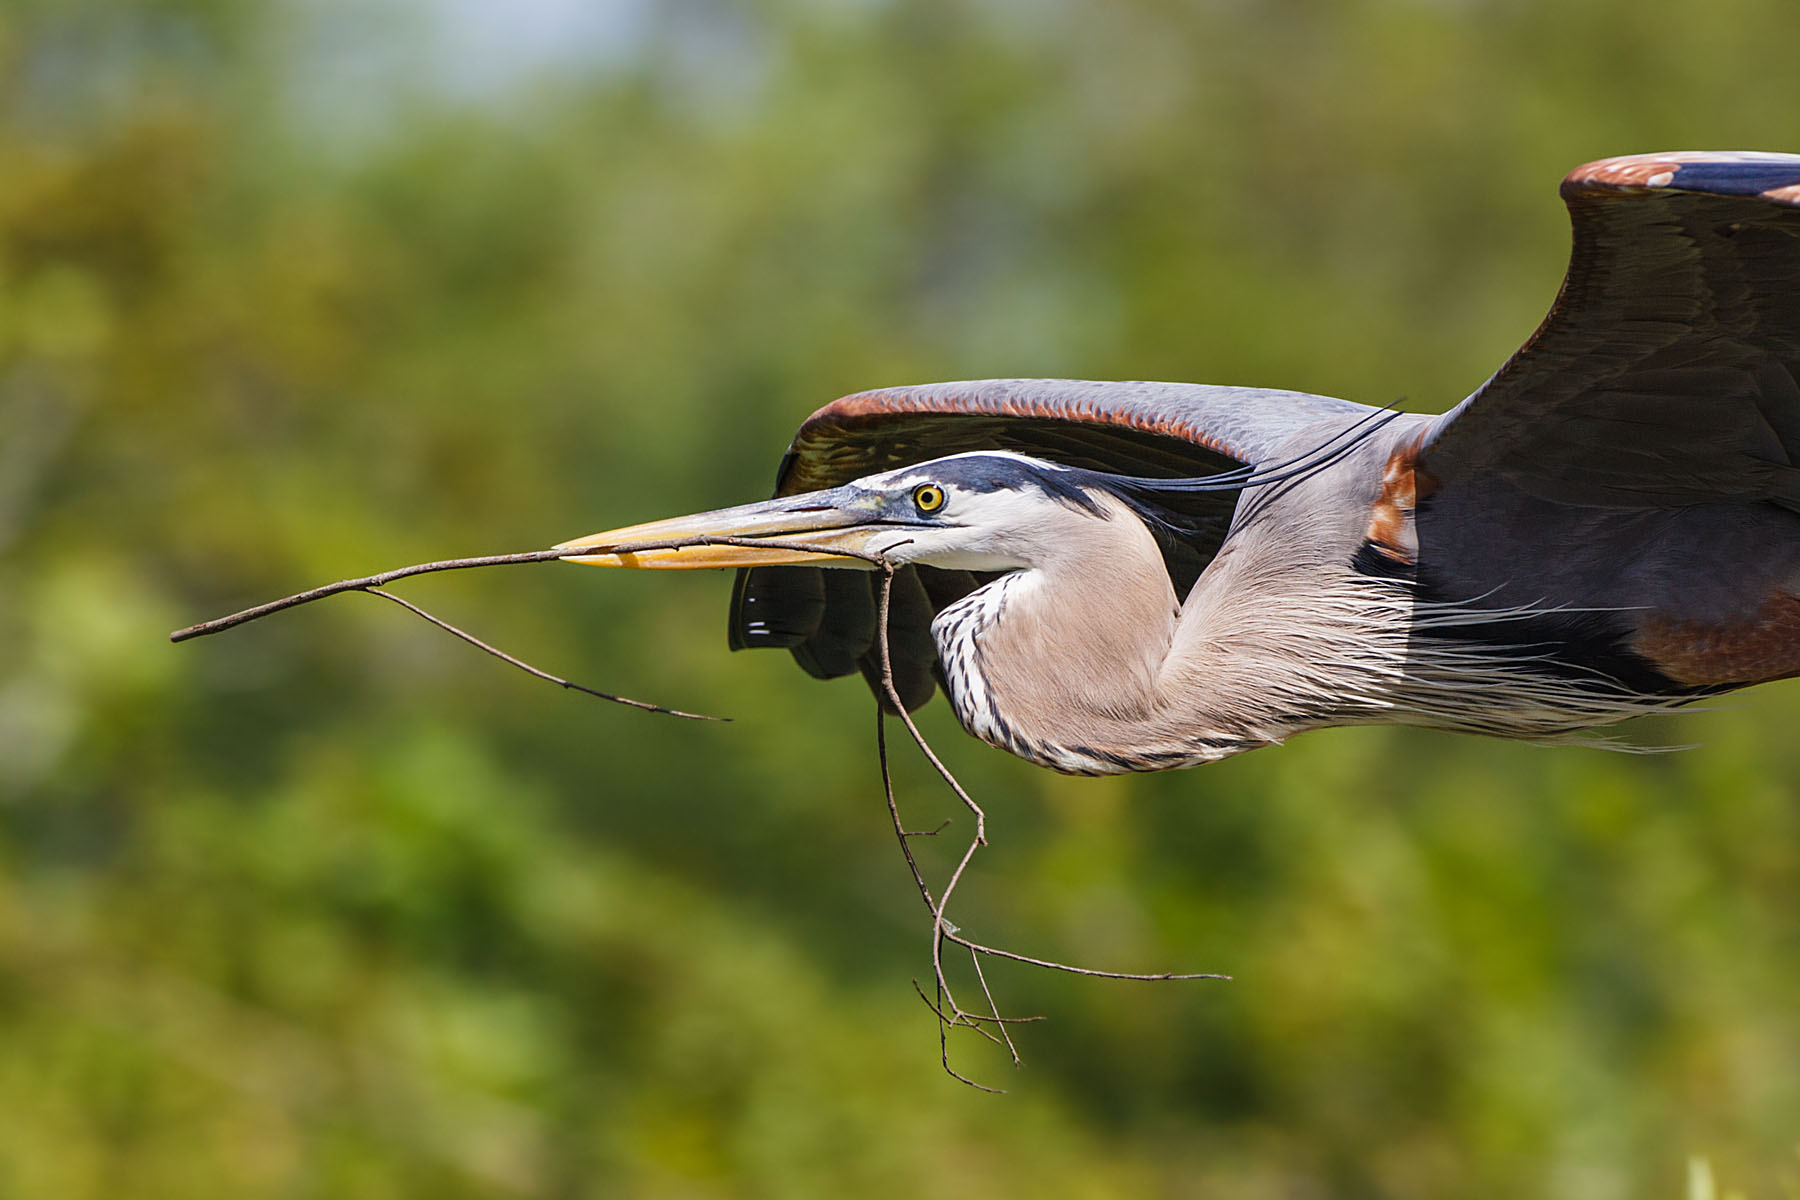 Blue Heron building a nest, Venice, Florida.  Click for next photo.